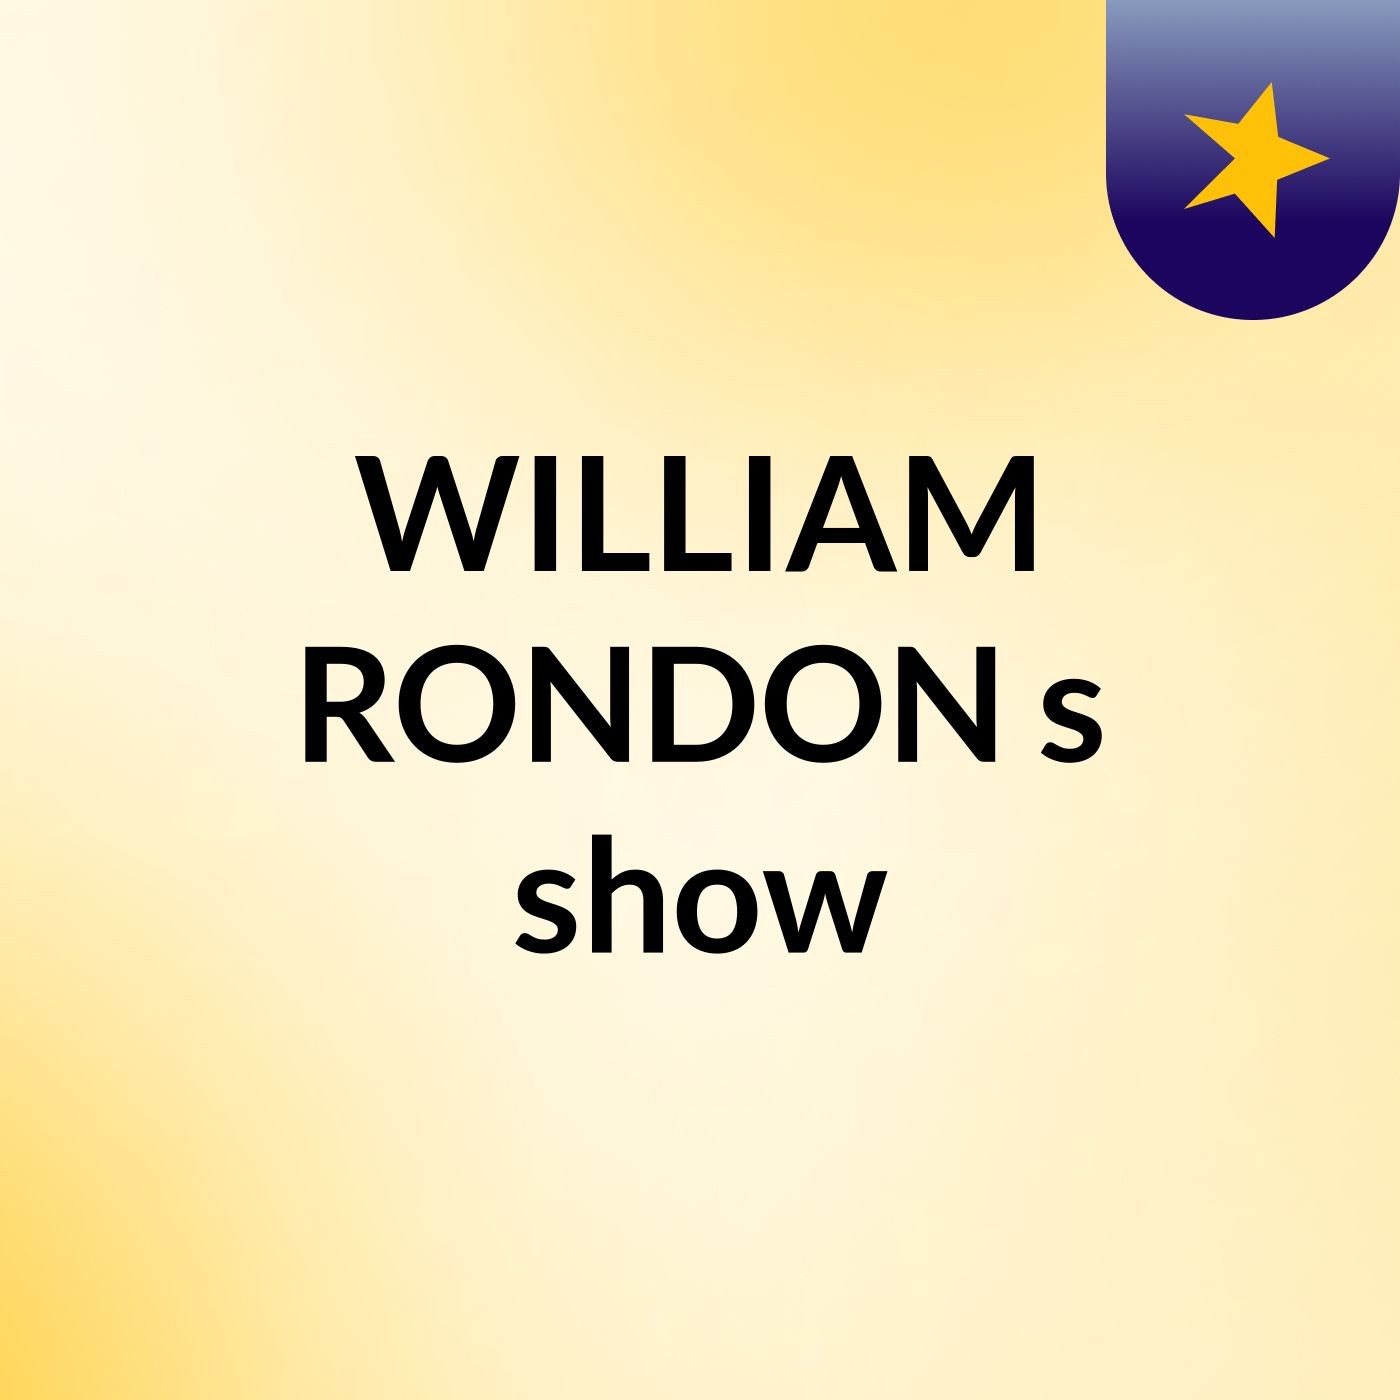 WILLIAM RONDON's show